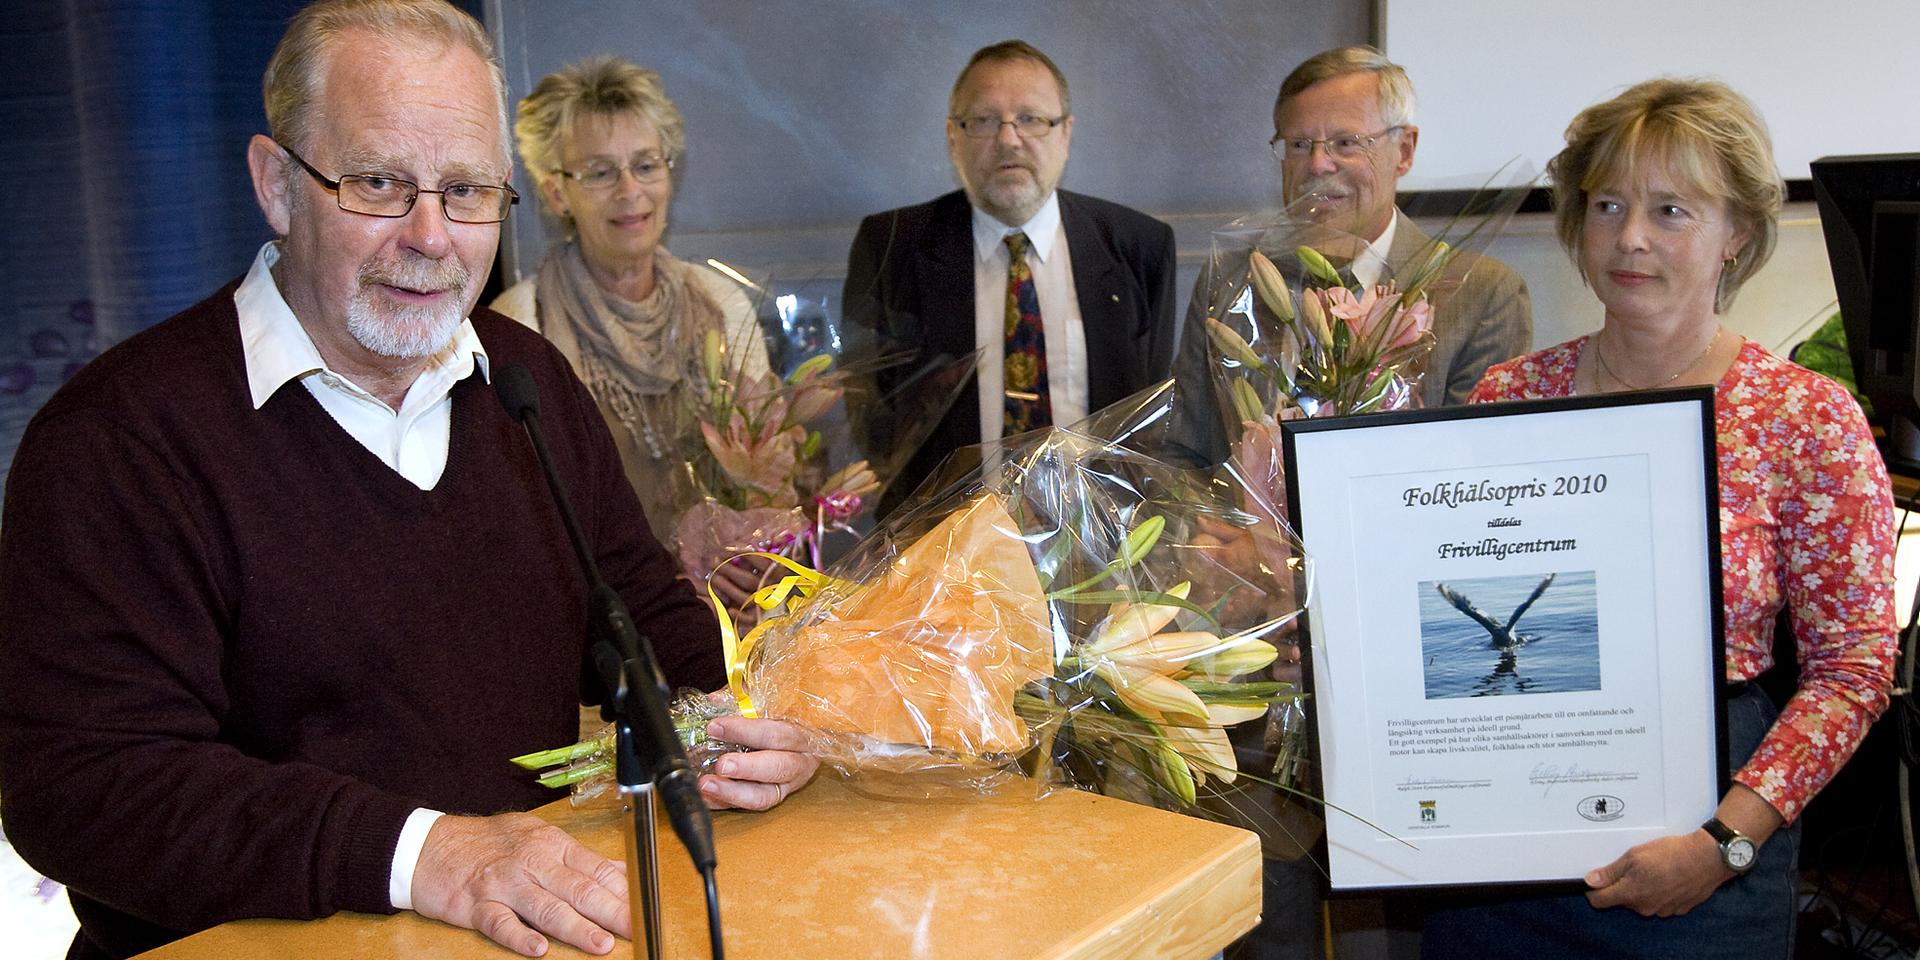 År 2010 fick Frivilligcentrum Folkhälsopriset av Uddevalla kommun. Från vänster Bjarne Rehnberg, Lill Marsk, Elving Andersson, Ralph Steen och Gunilla Eksell.